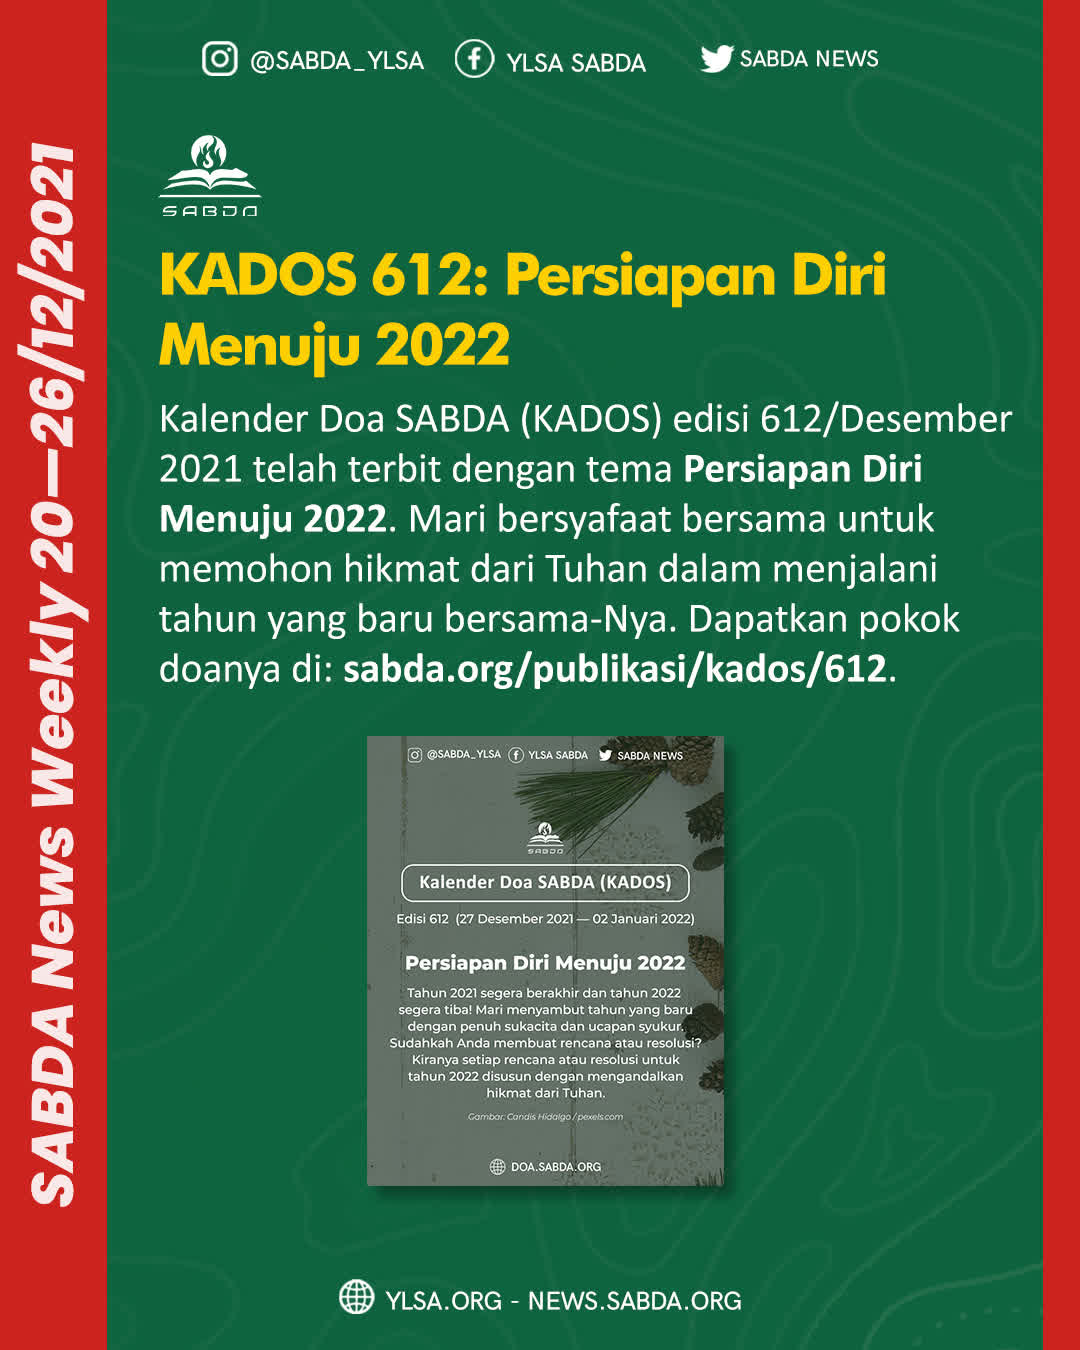 KADOS 612: Persiapan Diri Menuju 2022